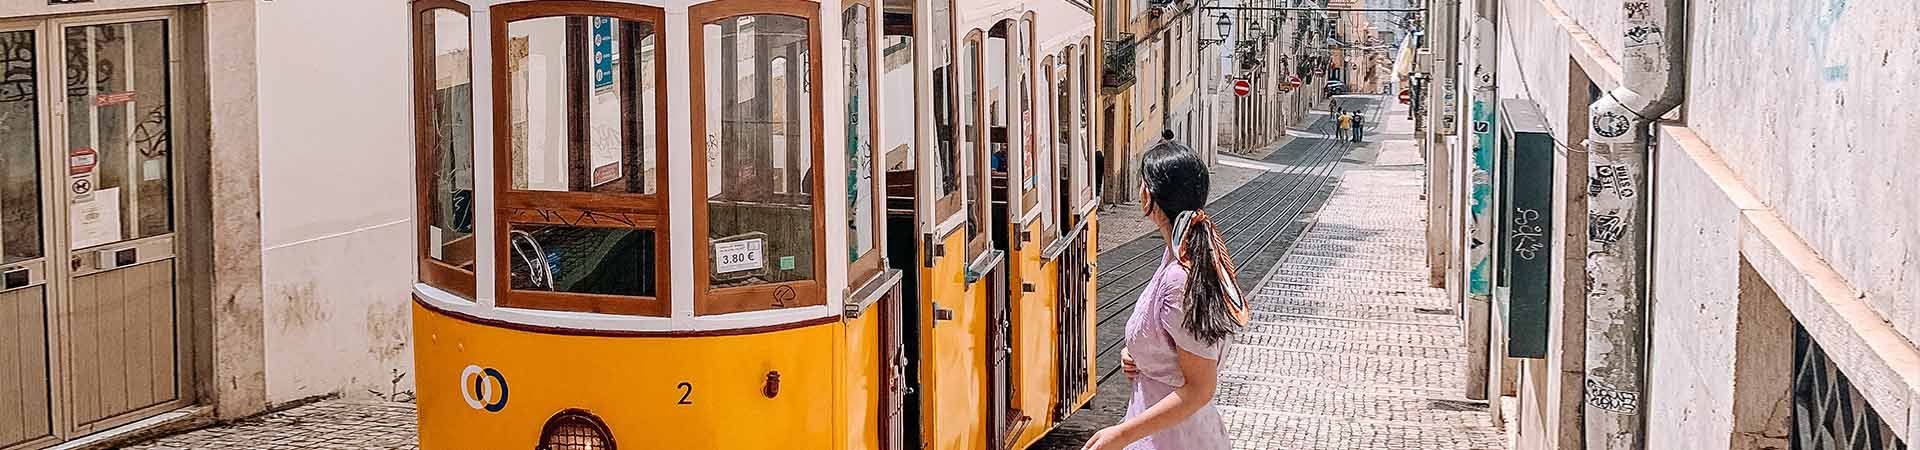 In der Mitte des Bildes fährt eine gelb-weiße Lissabonner Straßenbahn durch eine der gepflasterten Straßen Lissabons, die von Gebäuden mit alten Fassaden gesäumt sind. Rechts neben der Straßenbahn steht ein brünettes Mädchen, das ein lila Kleid trägt und ihr Haar mit einem farbigen Schal zurückgebunden hat und auf die Straßenbahn blickt.